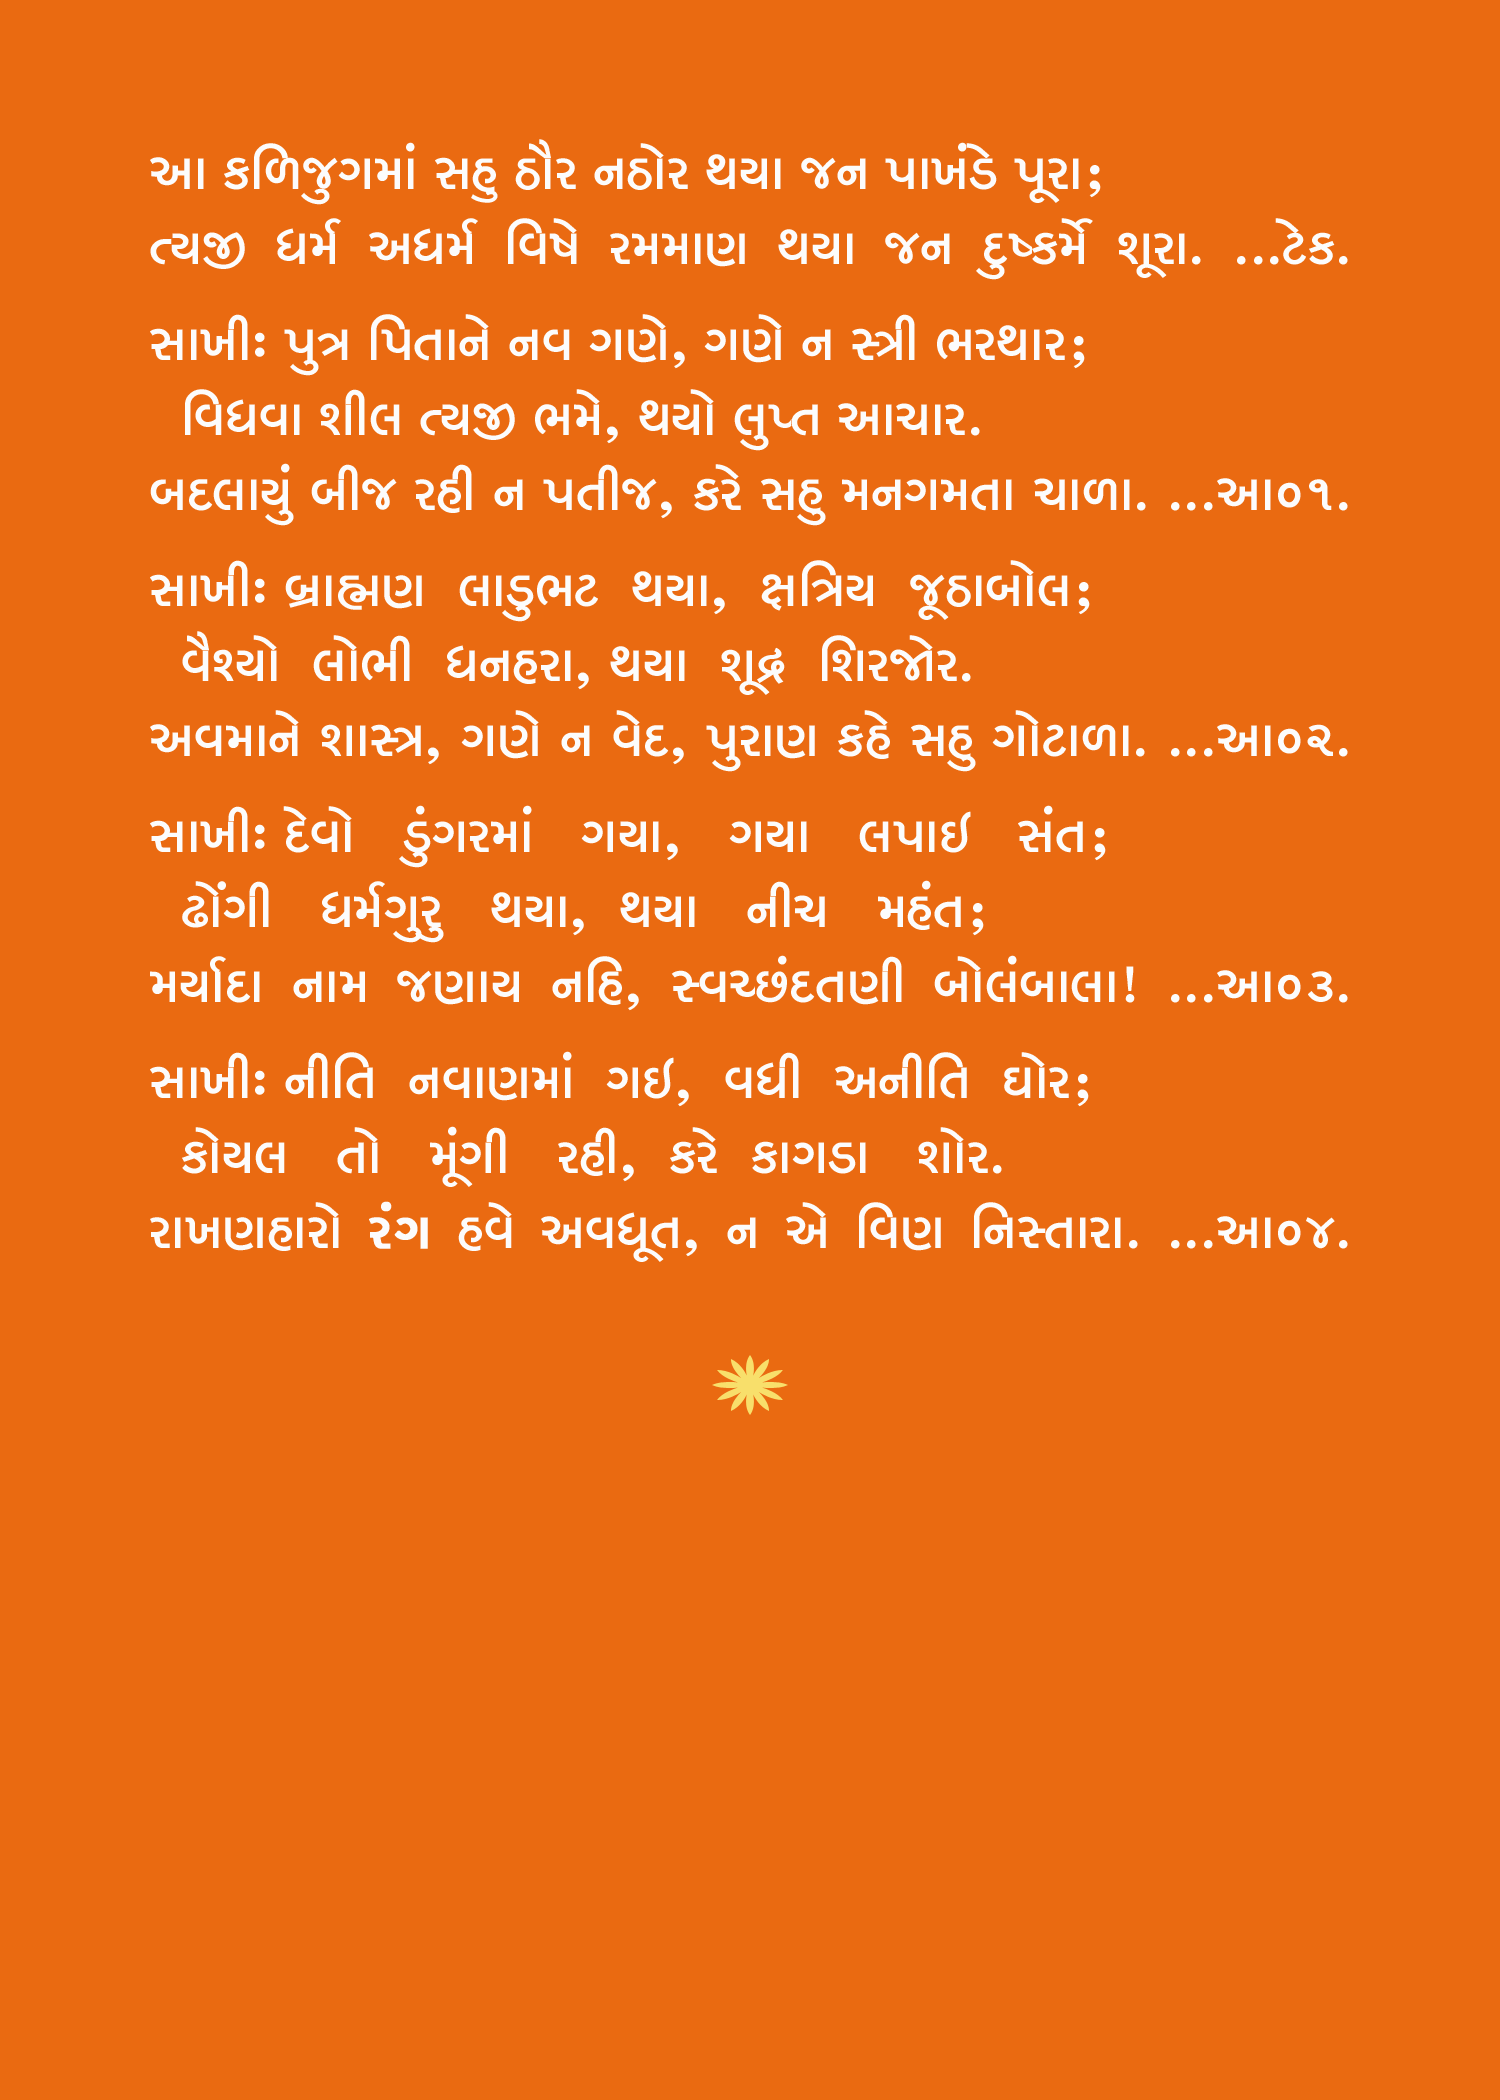 bhajan lyrics gujarati pdf